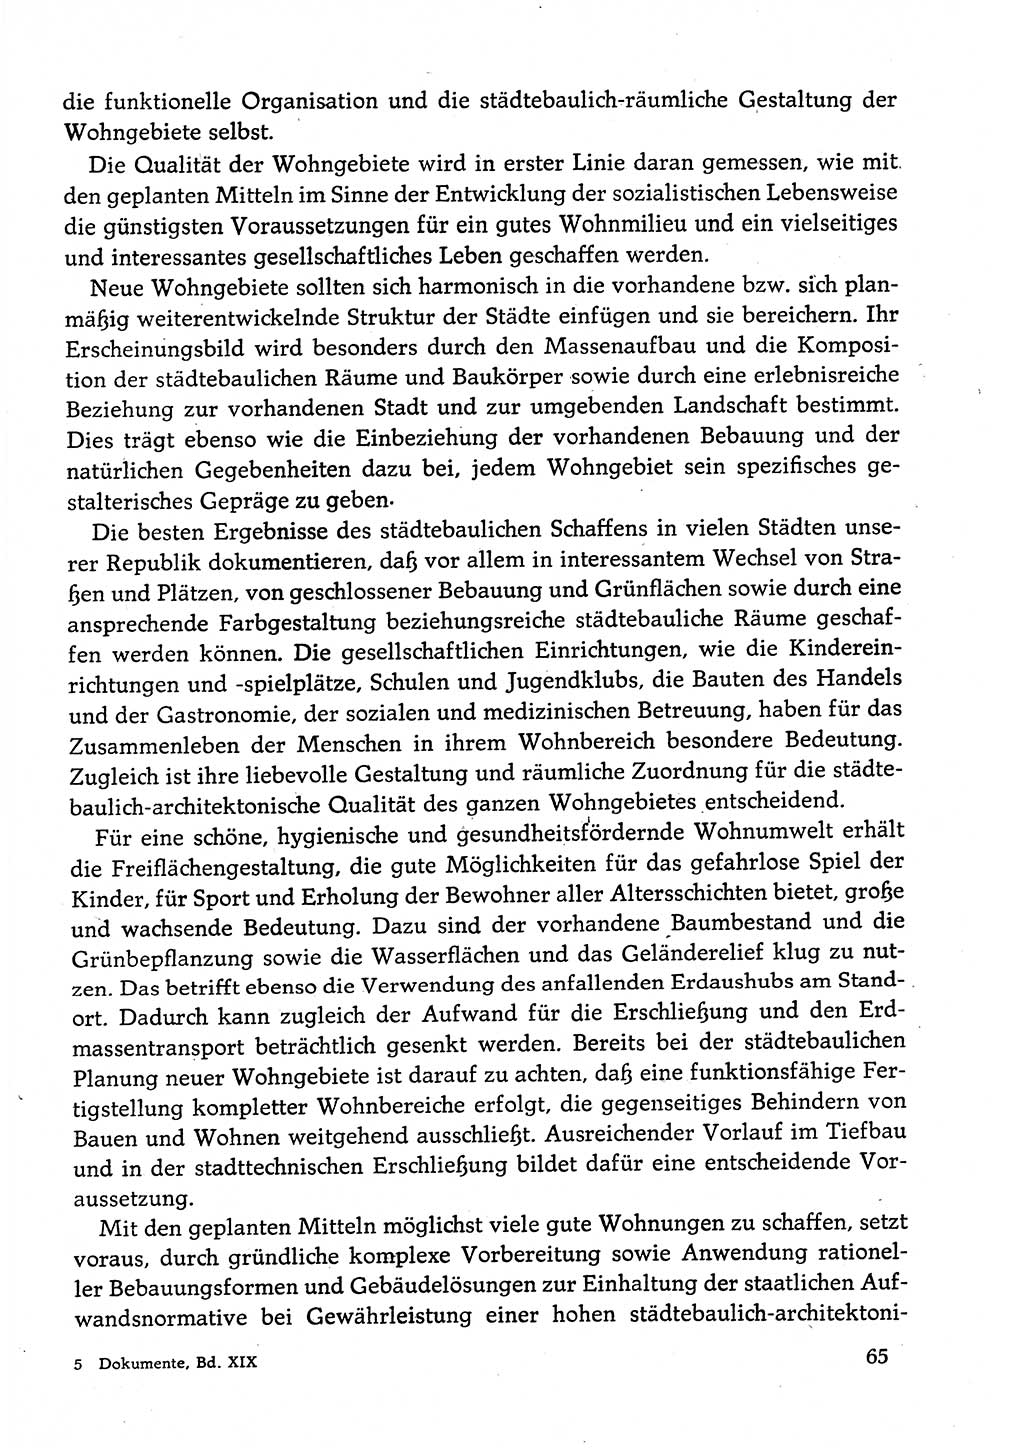 Dokumente der Sozialistischen Einheitspartei Deutschlands (SED) [Deutsche Demokratische Republik (DDR)] 1982-1983, Seite 65 (Dok. SED DDR 1982-1983, S. 65)